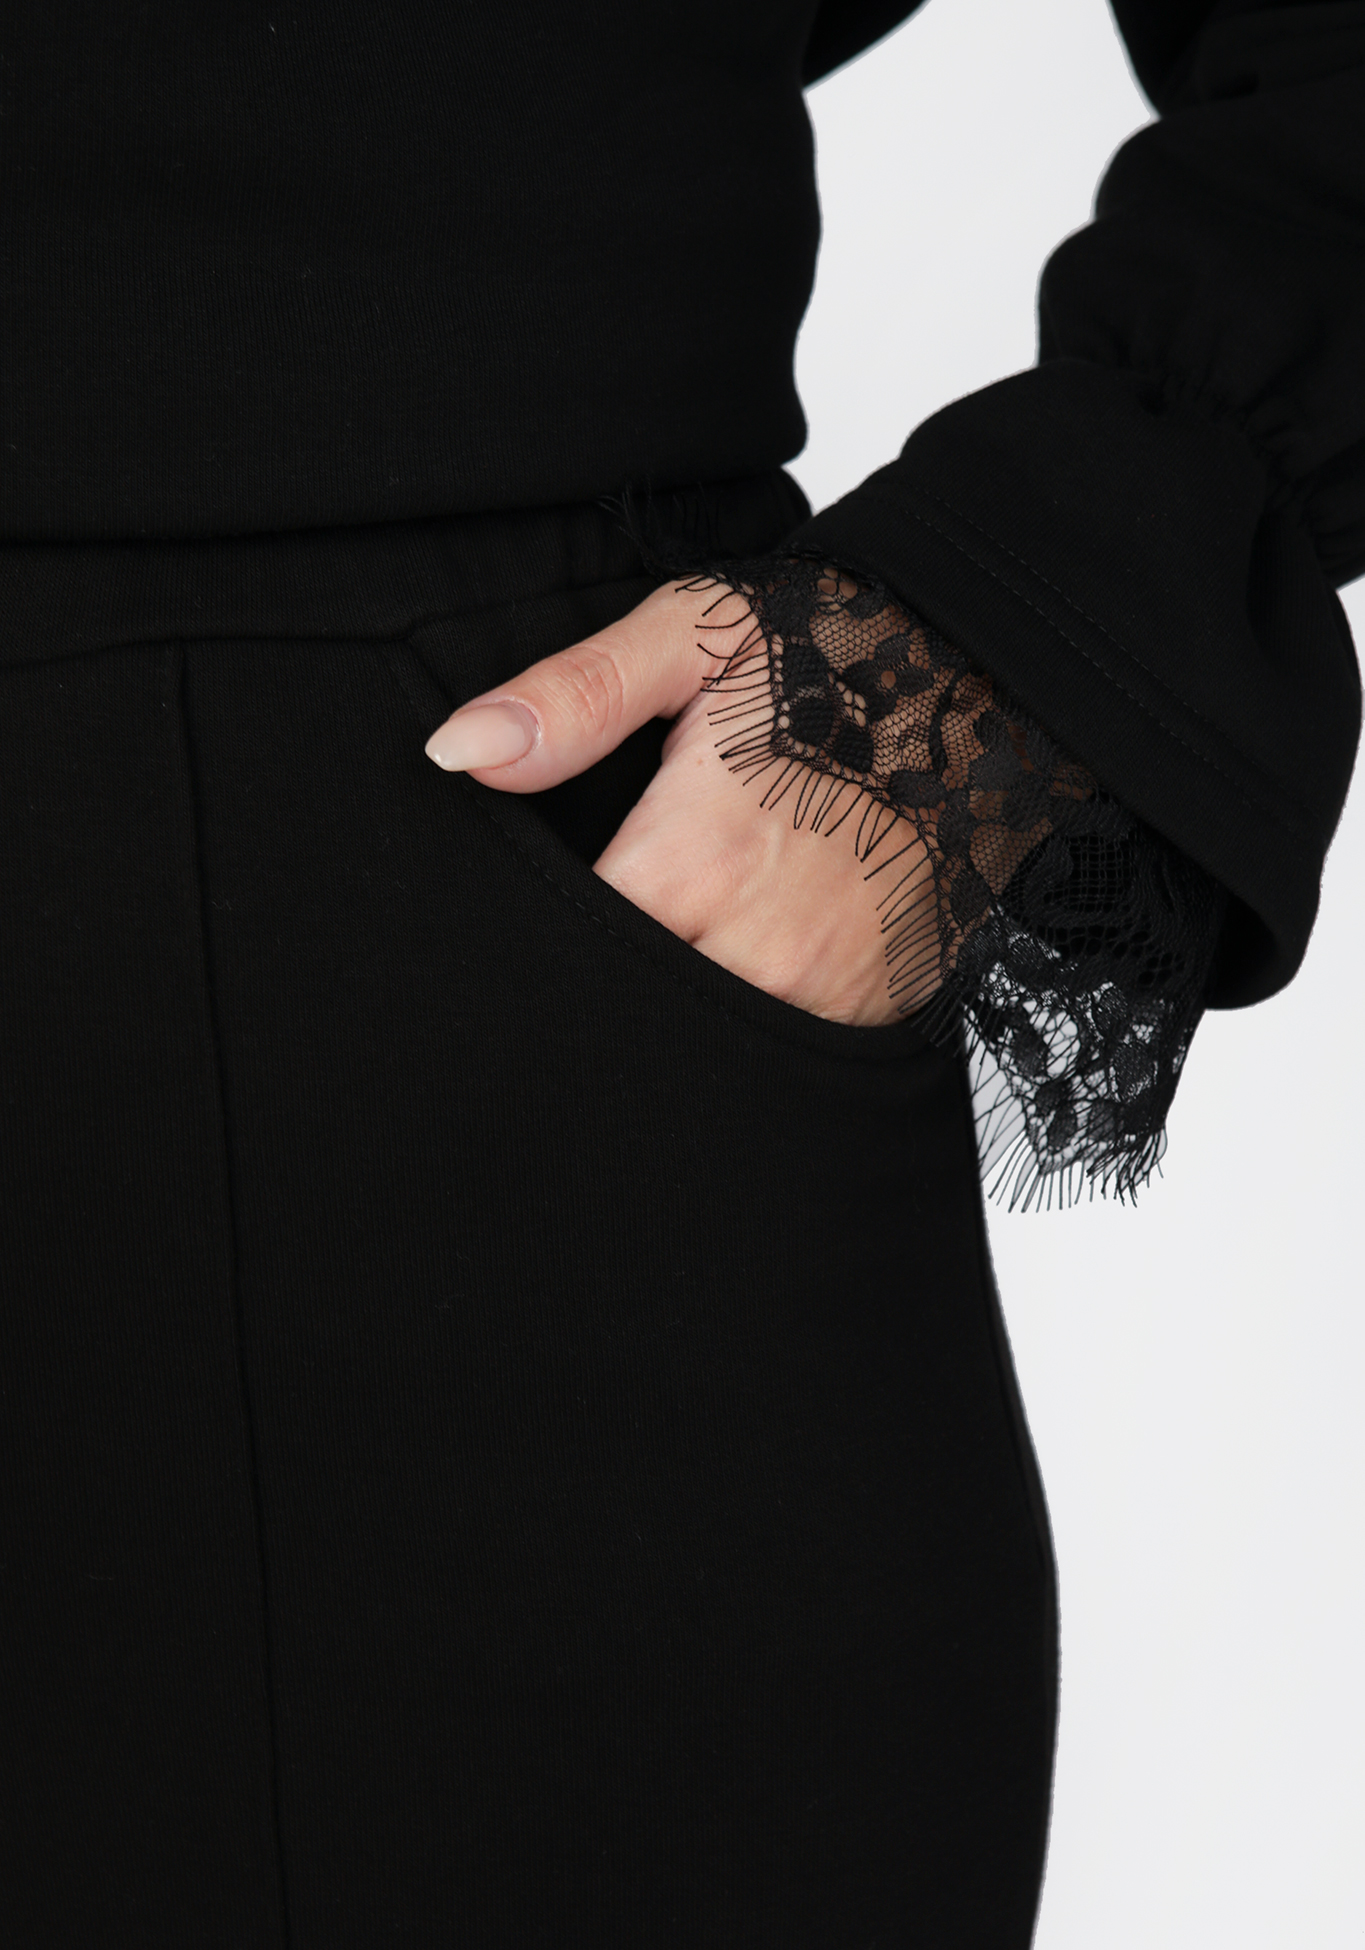 Брюки широкие с накладными карманами сзади VeraVo, размер 50, цвет черный - фото 5